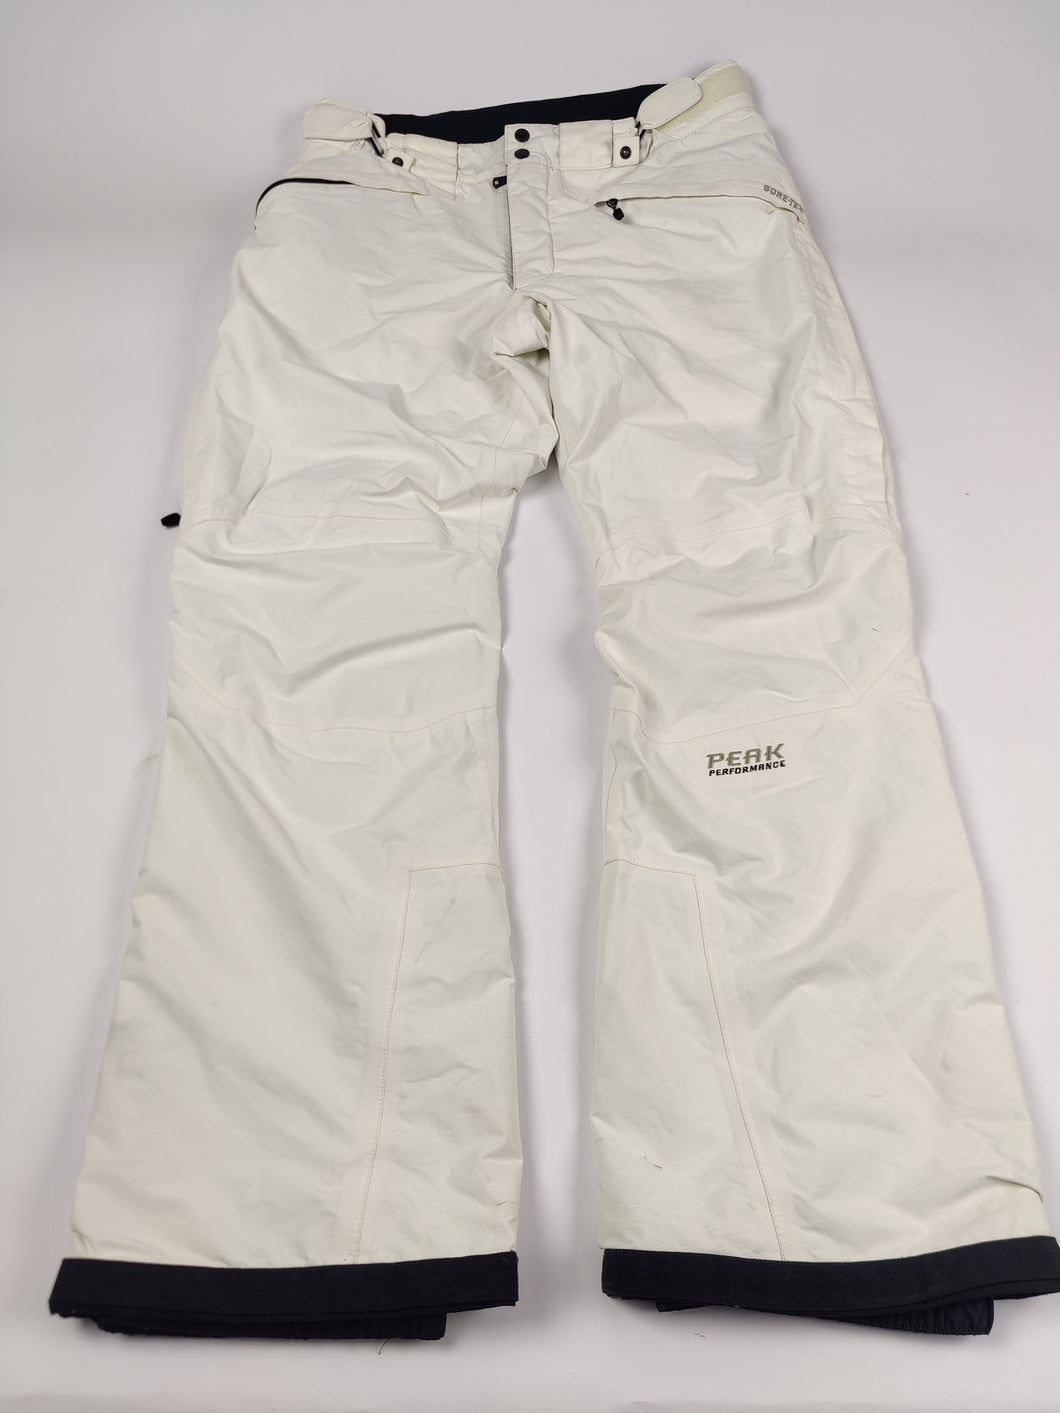 Staan voor Ook kosten Peak Performance Skibroek Goretex Wit Dames XL – Tweedehands Outdoorkleding